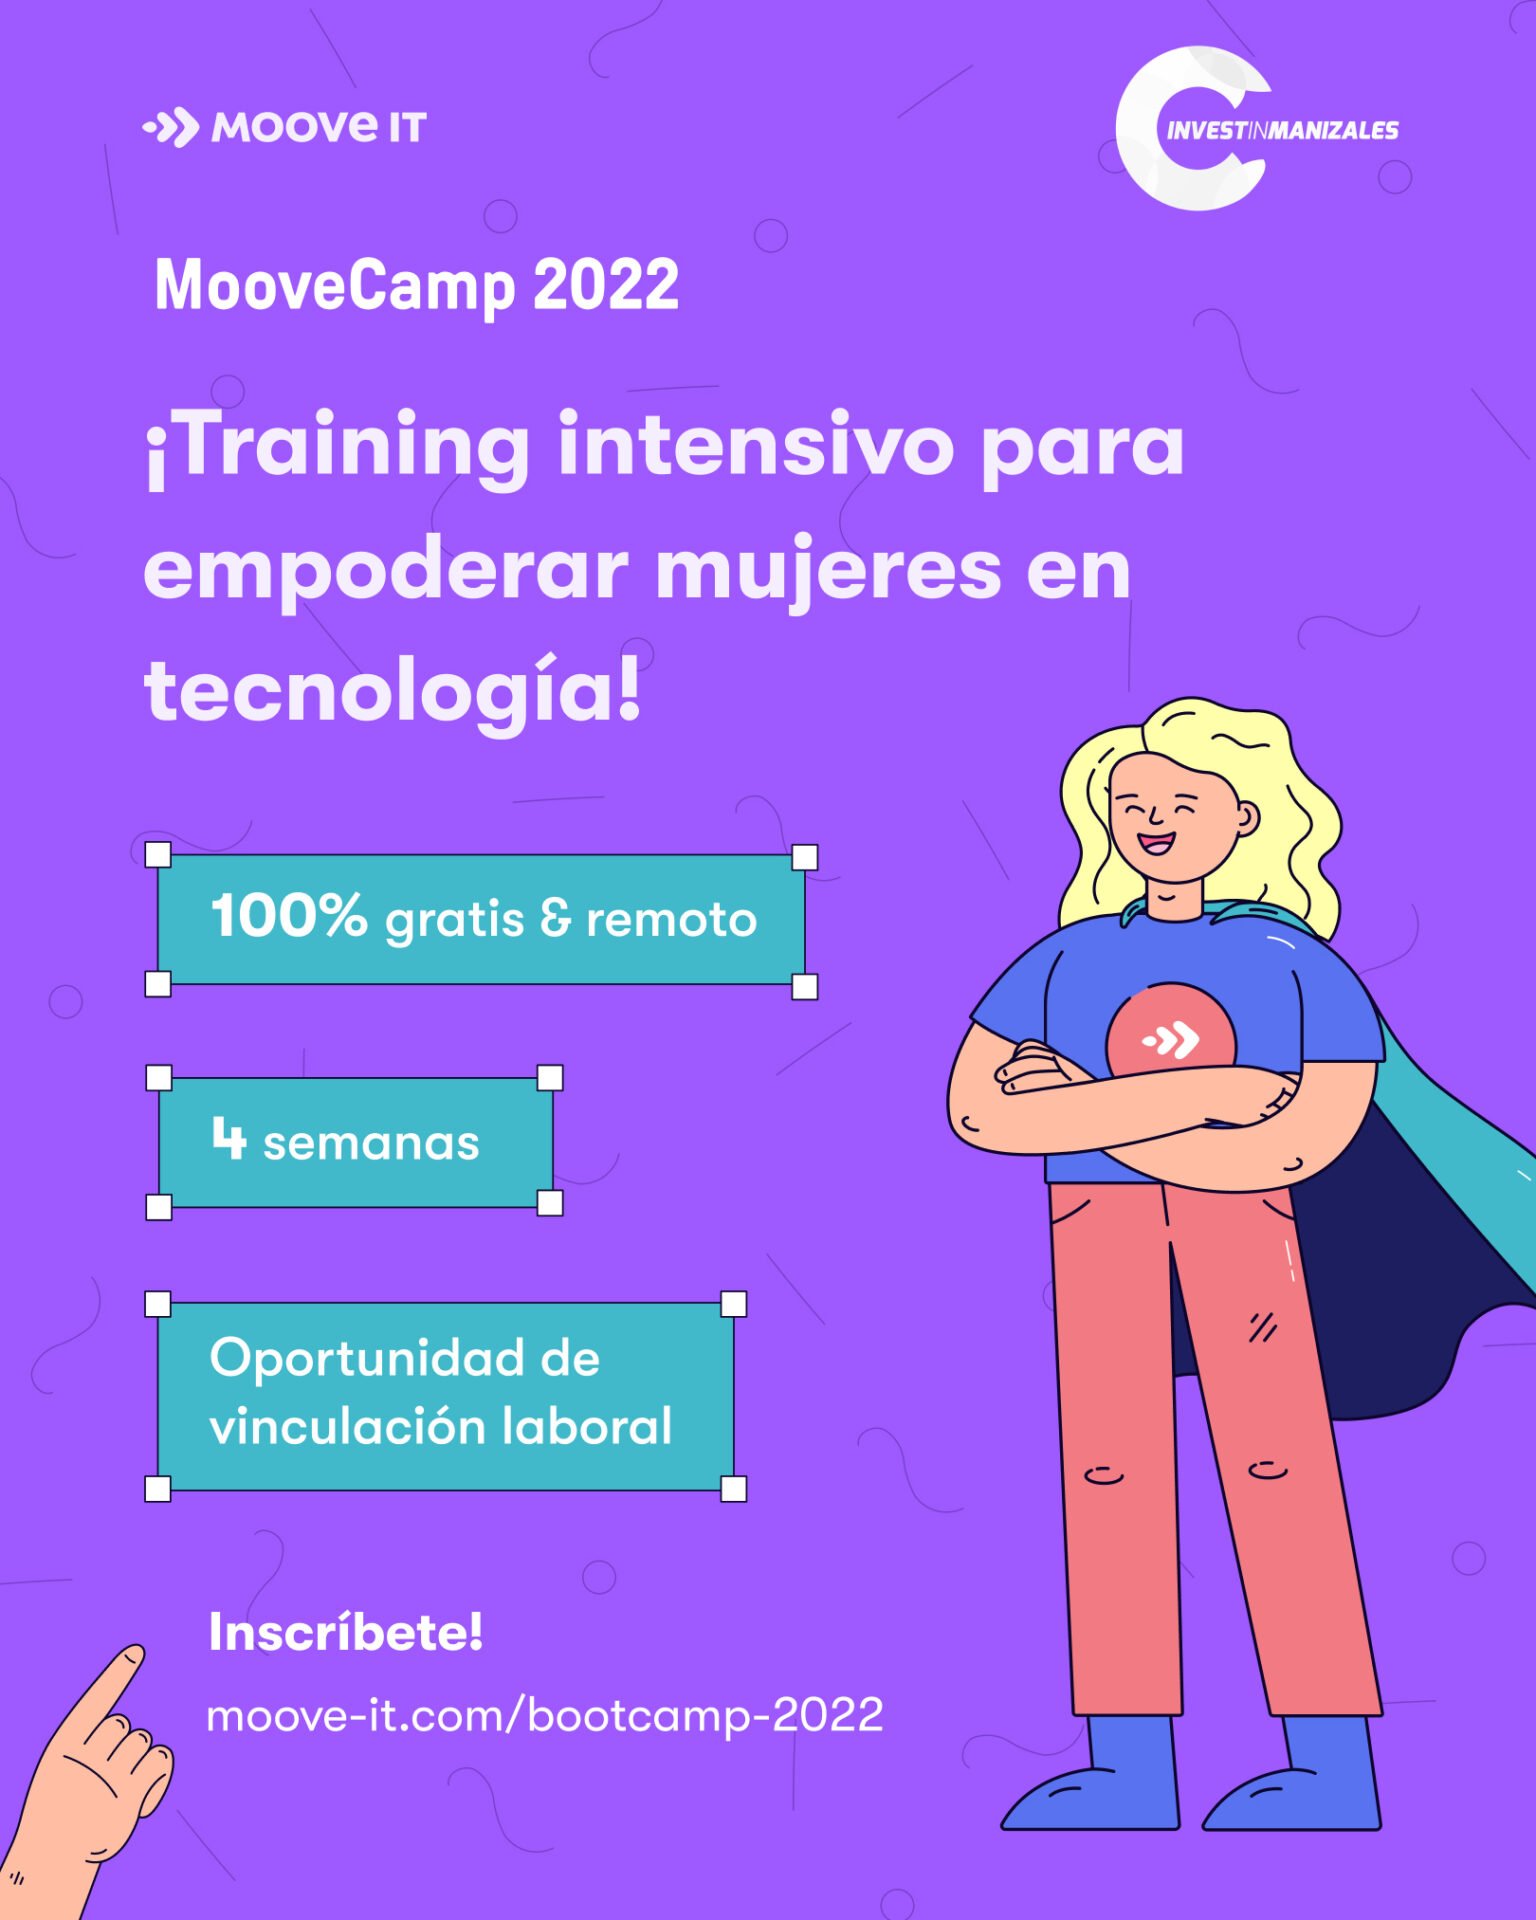 Training intensivo para empoderar mujeres en tecnología, convocatoria de Invest In Manizales.